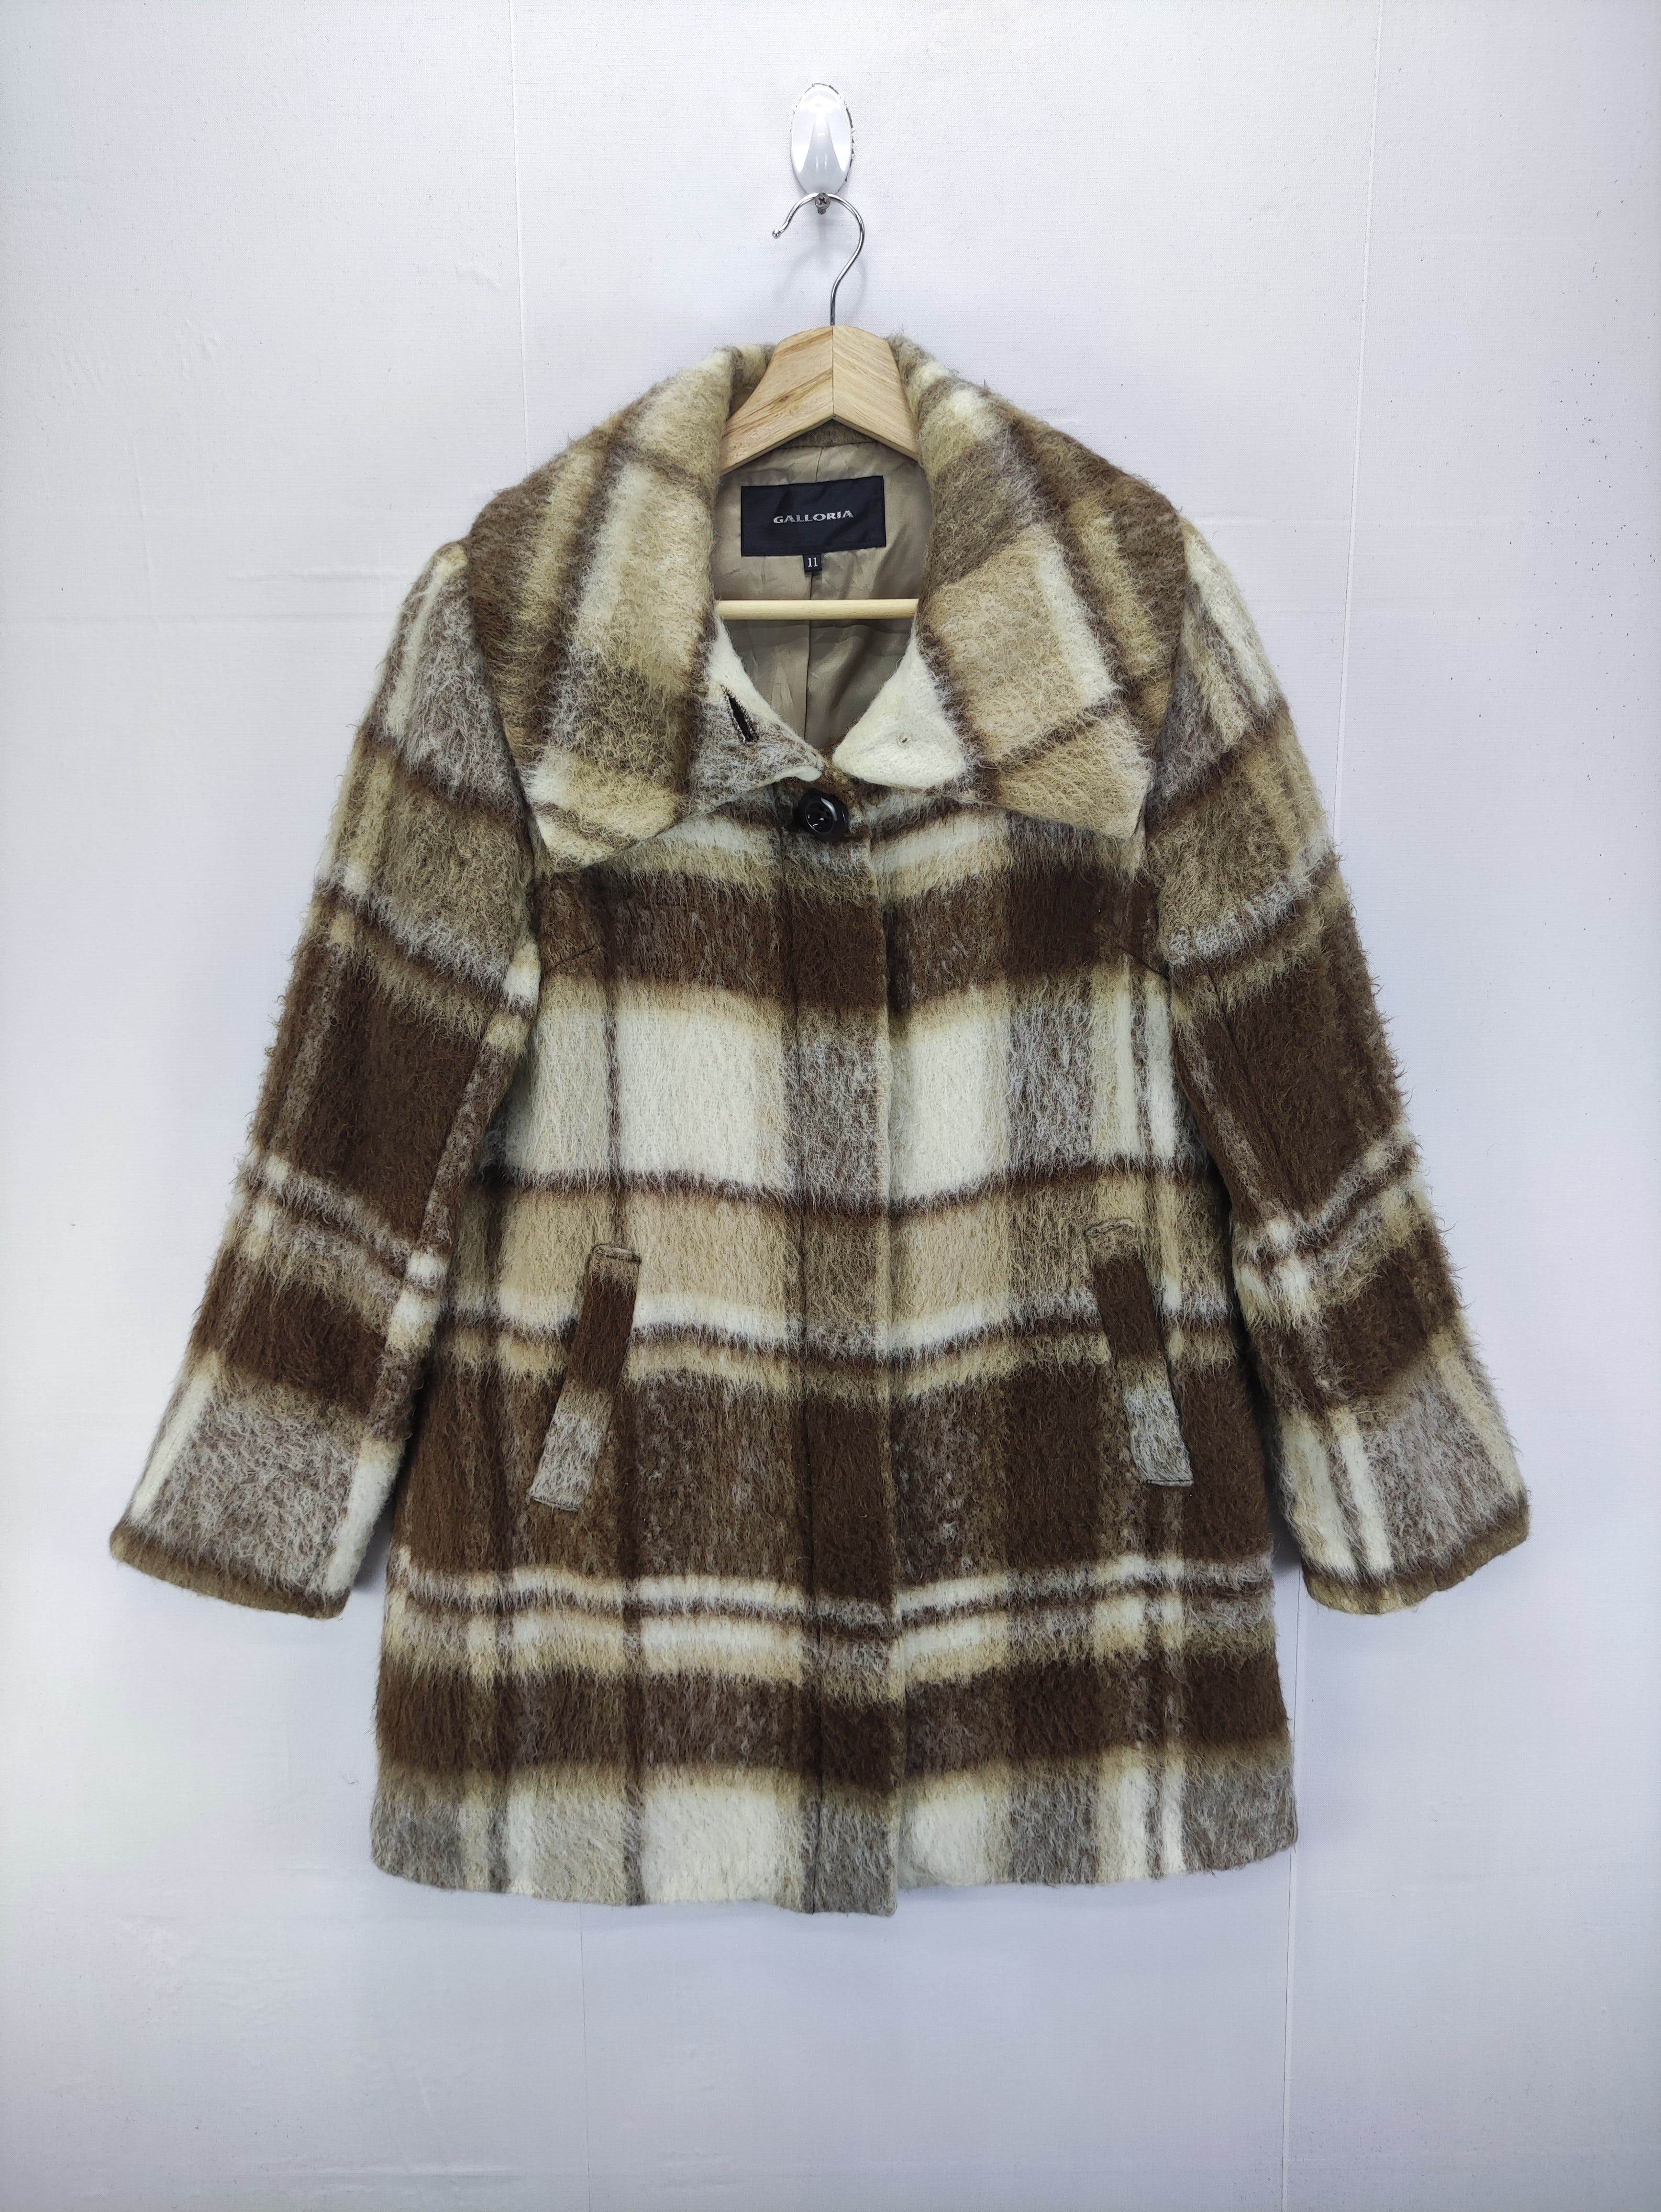 Vintage Wool Coat Jacket By Galloria - 1